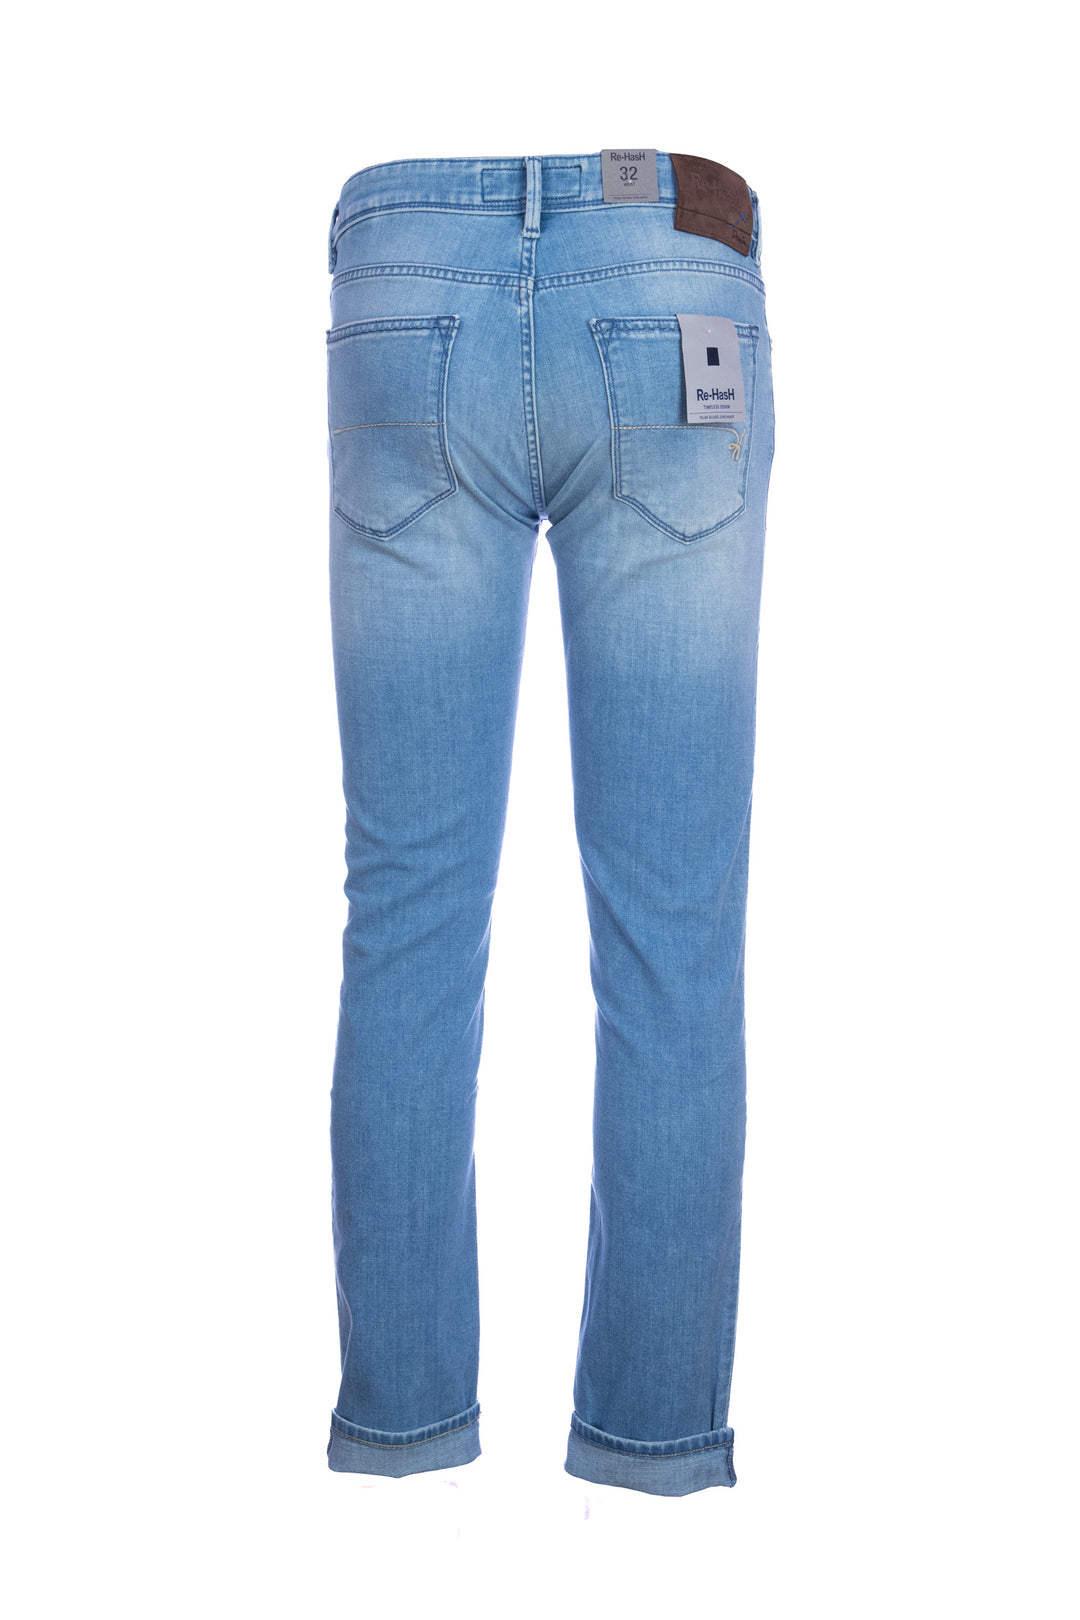 RE-HASH Jeans 5 tasche “RUBENS-30” in denim stretch lavaggio chiaro - Mancinelli 1954